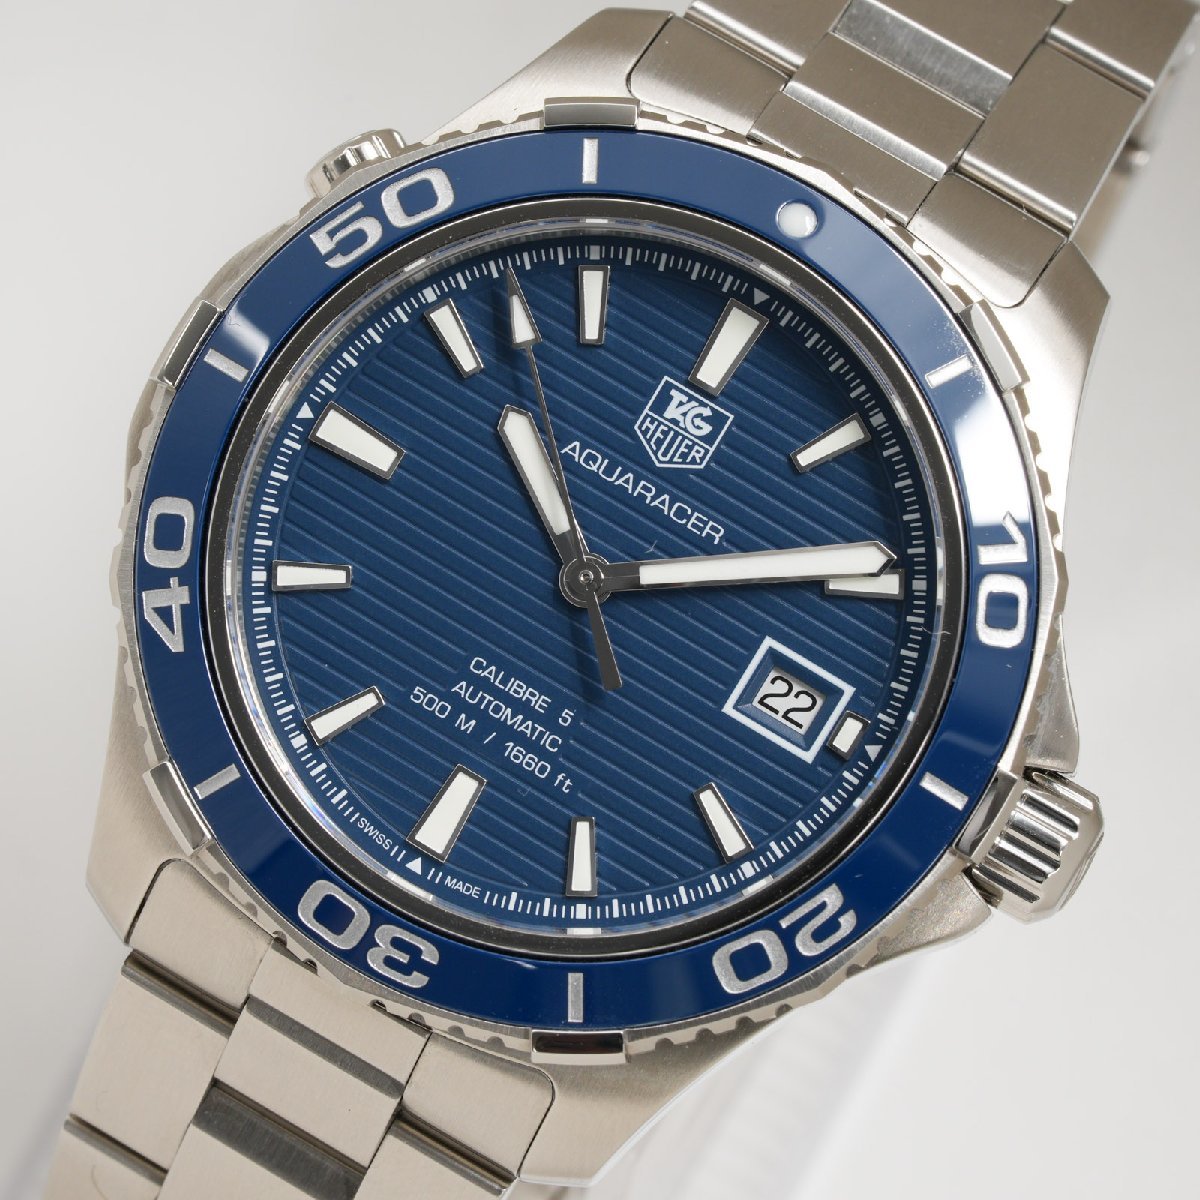 タグホイヤー TAG HEUER 腕時計 アクアレーサー 500m Calibre 5 WAK2111.BA0830 自動巻 青文字盤 メンズ 中古 極美品 [質イコー]